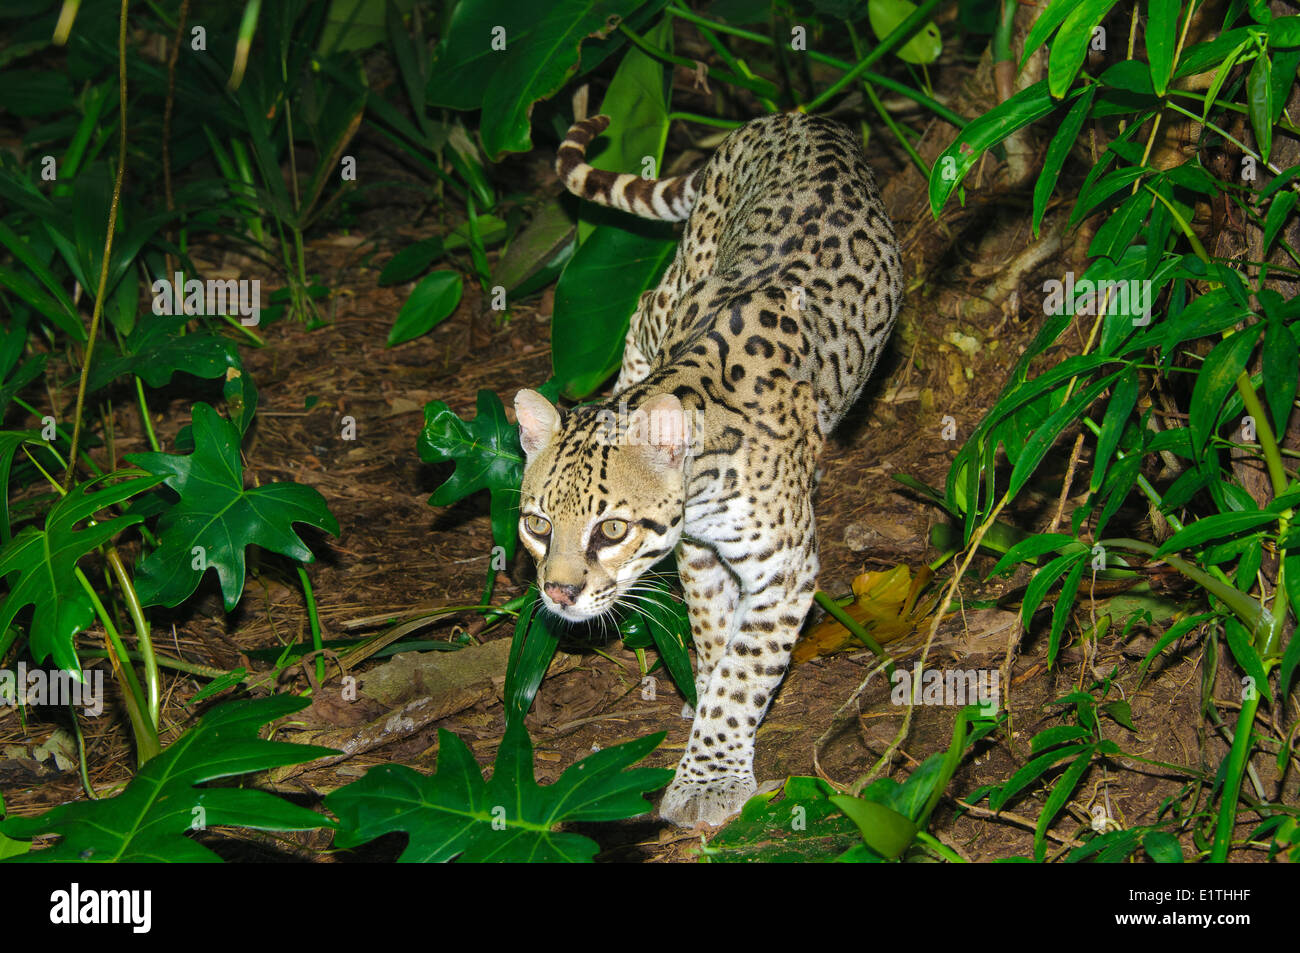 Ocelot (Leopardus pardalis), tropical rain forest, Belize, Central America Stock Photo